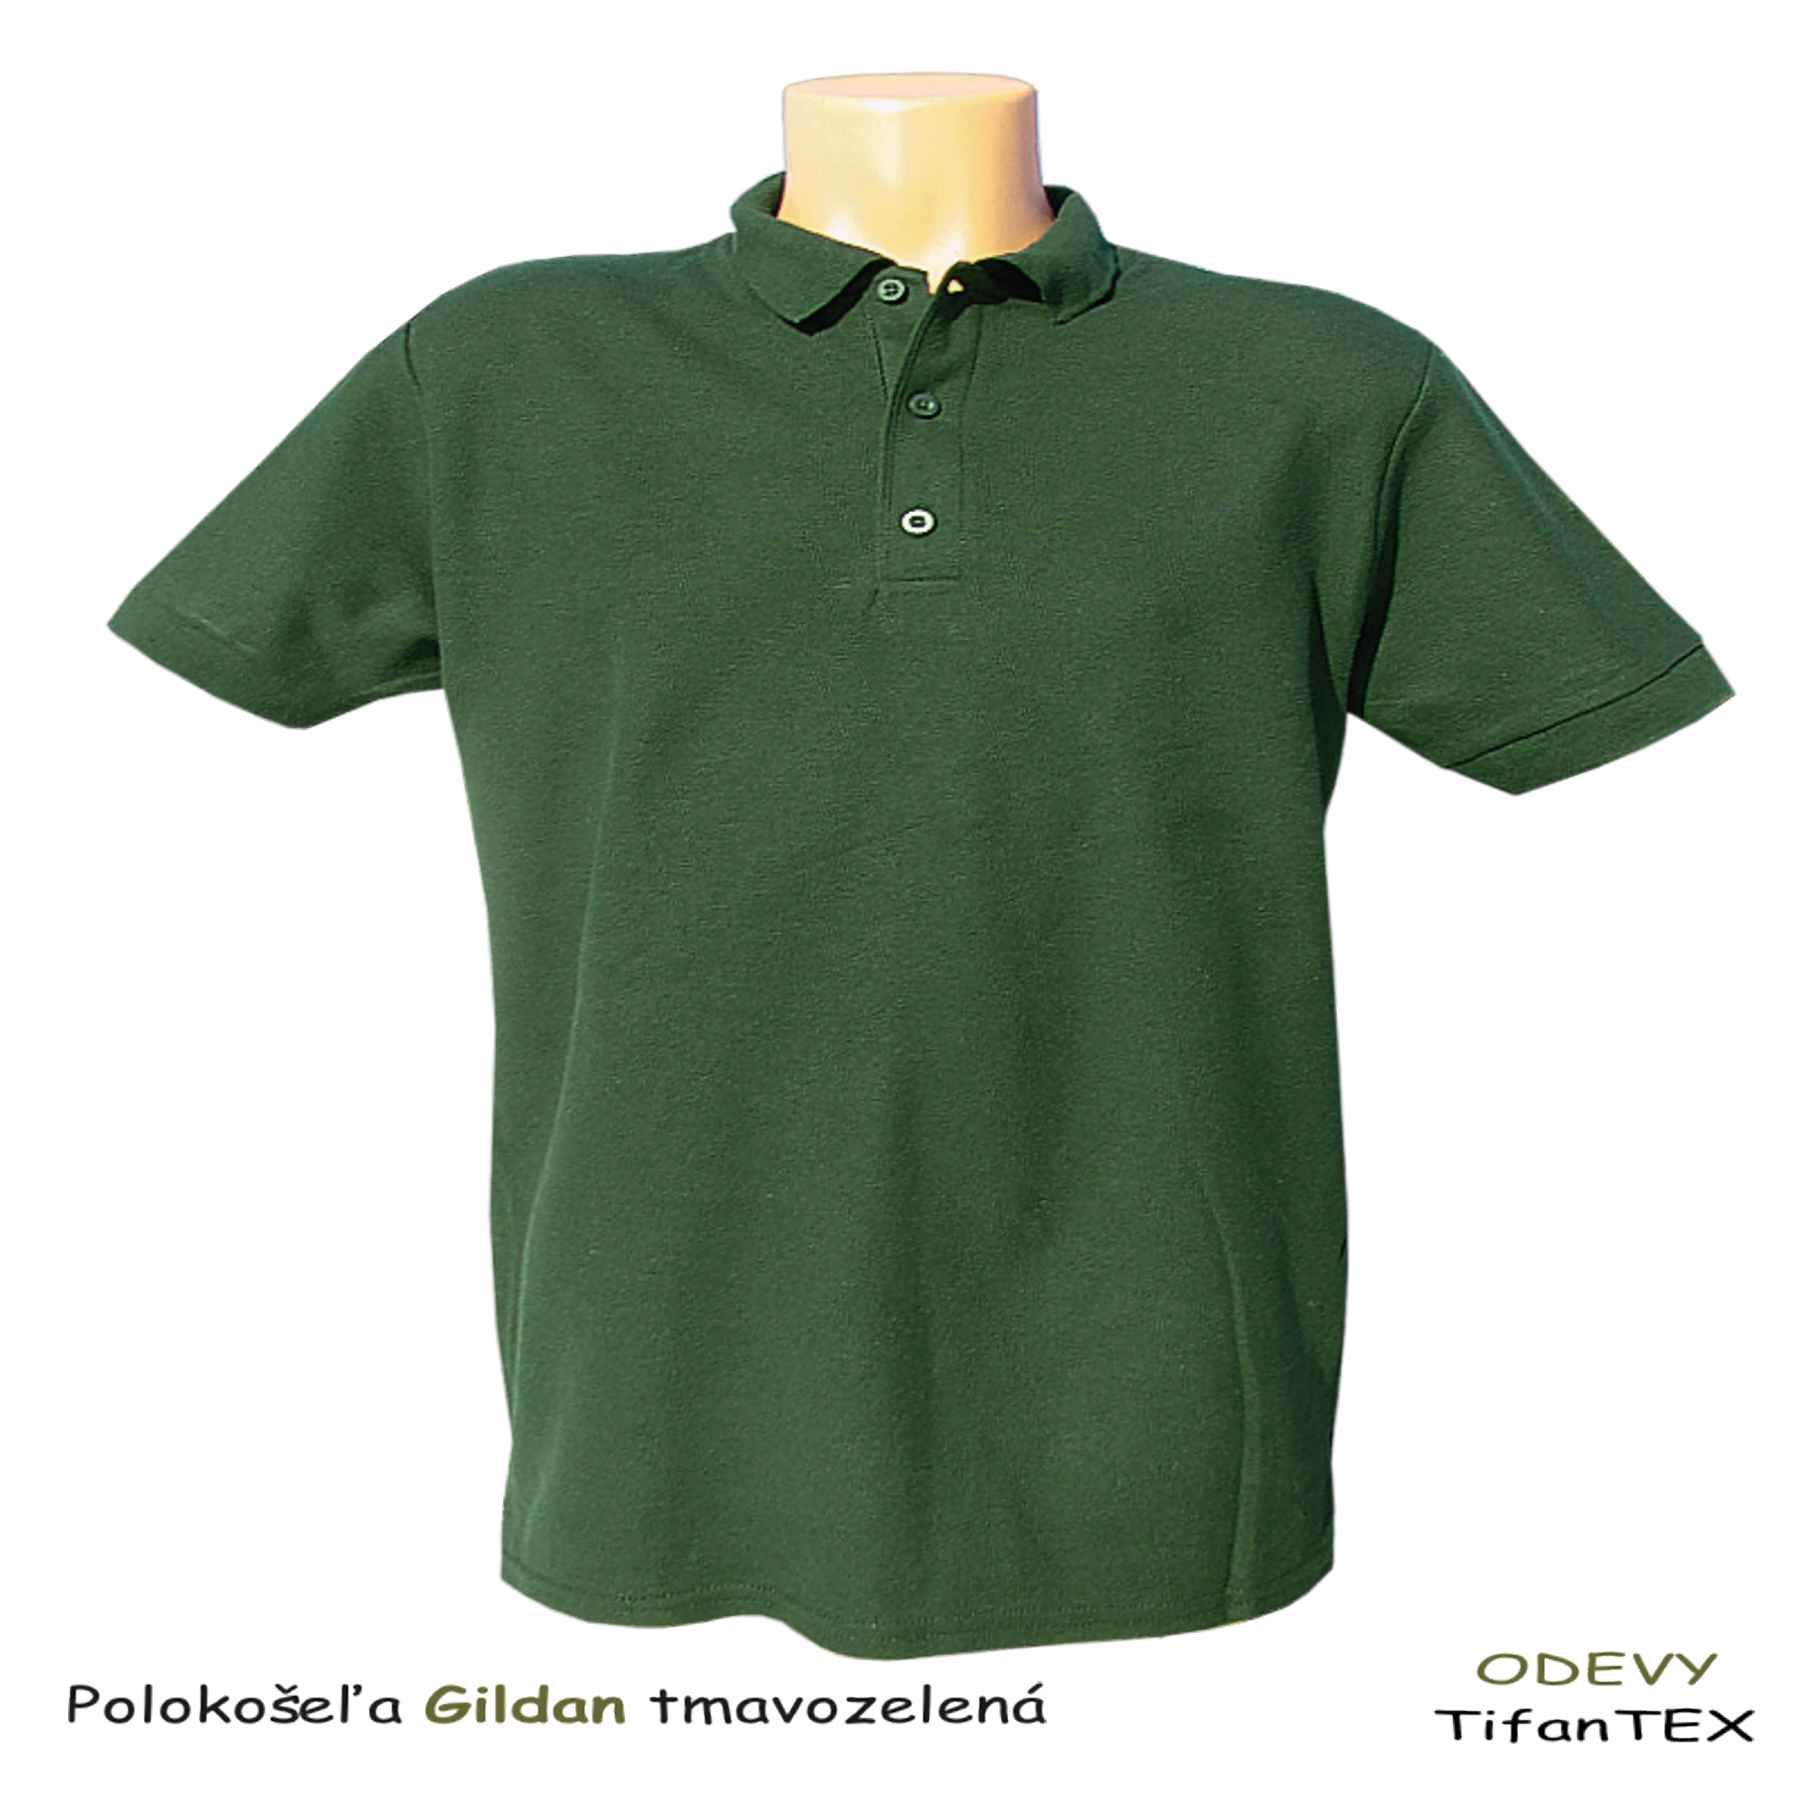 Bavlnená polokošeľa pánska Gildan zelená army, pracovné odevy veľkosklad Tifantex